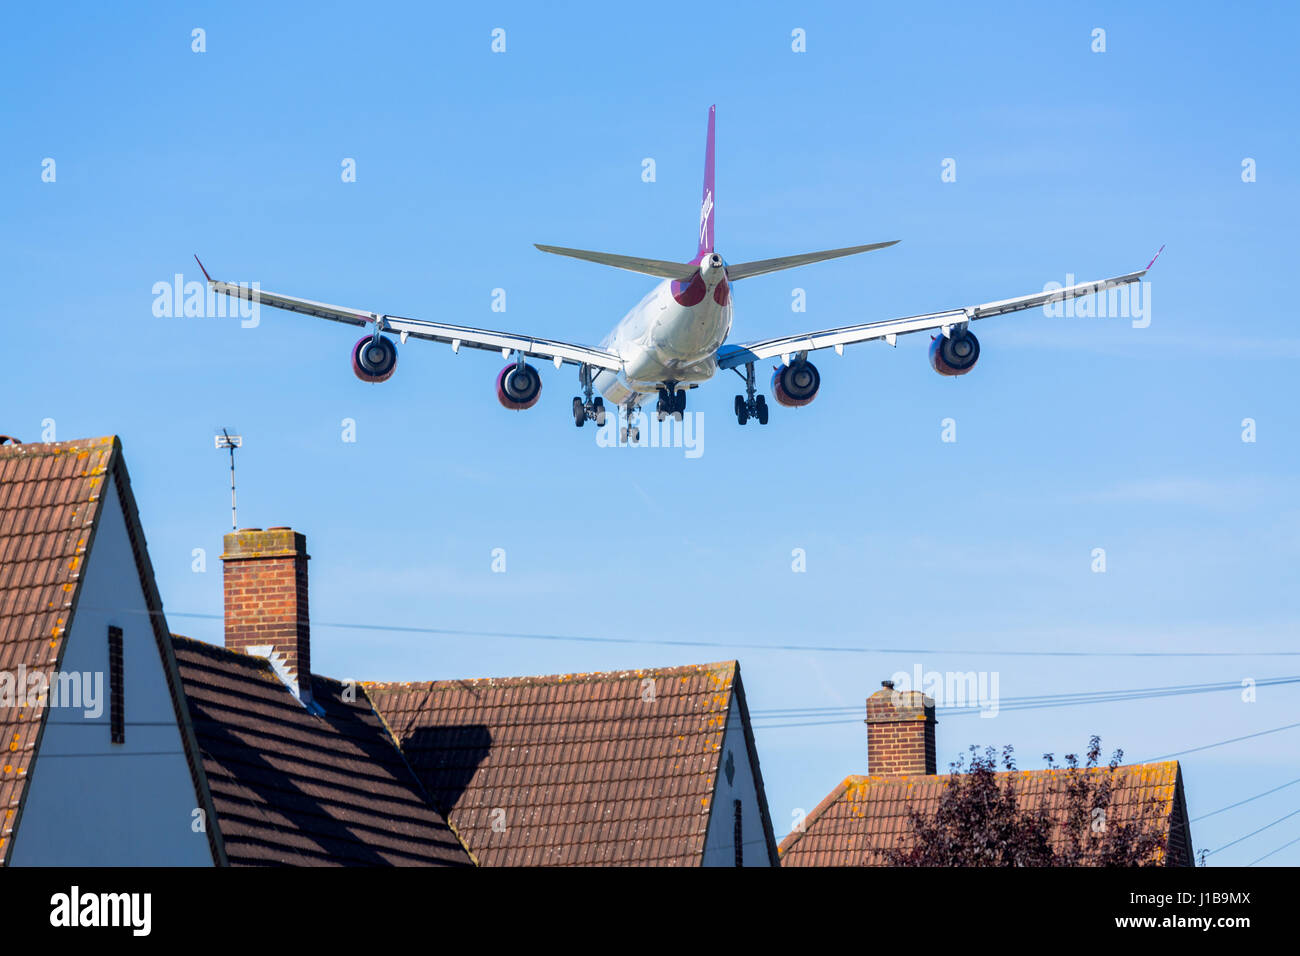 Avions volant bas au-dessus de l'origine de maisons la pollution sonore, l'aéroport de Heathrow, Londres, UK Banque D'Images